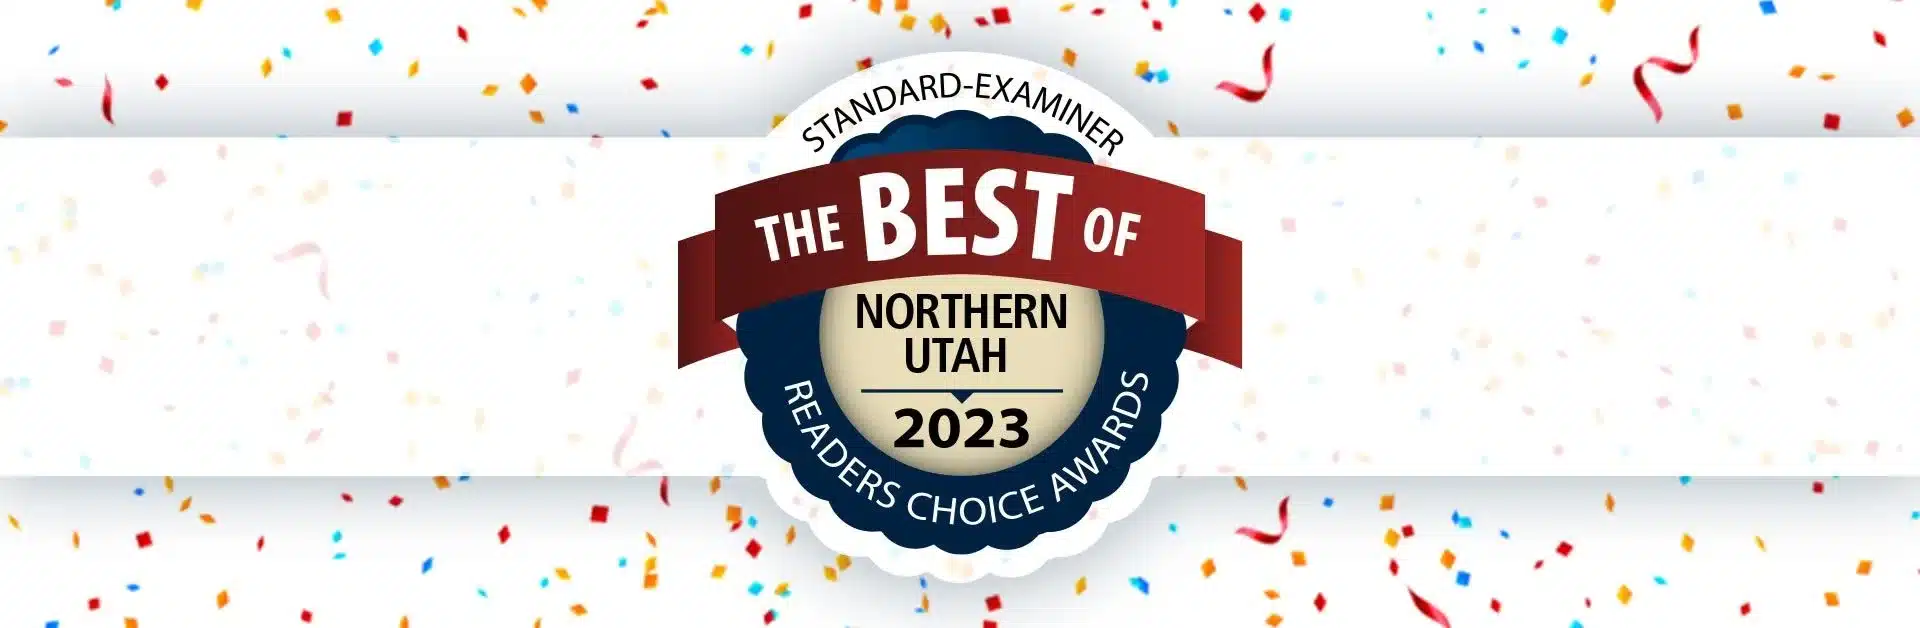 Standard-Examiner Best of Northern Utah 2023